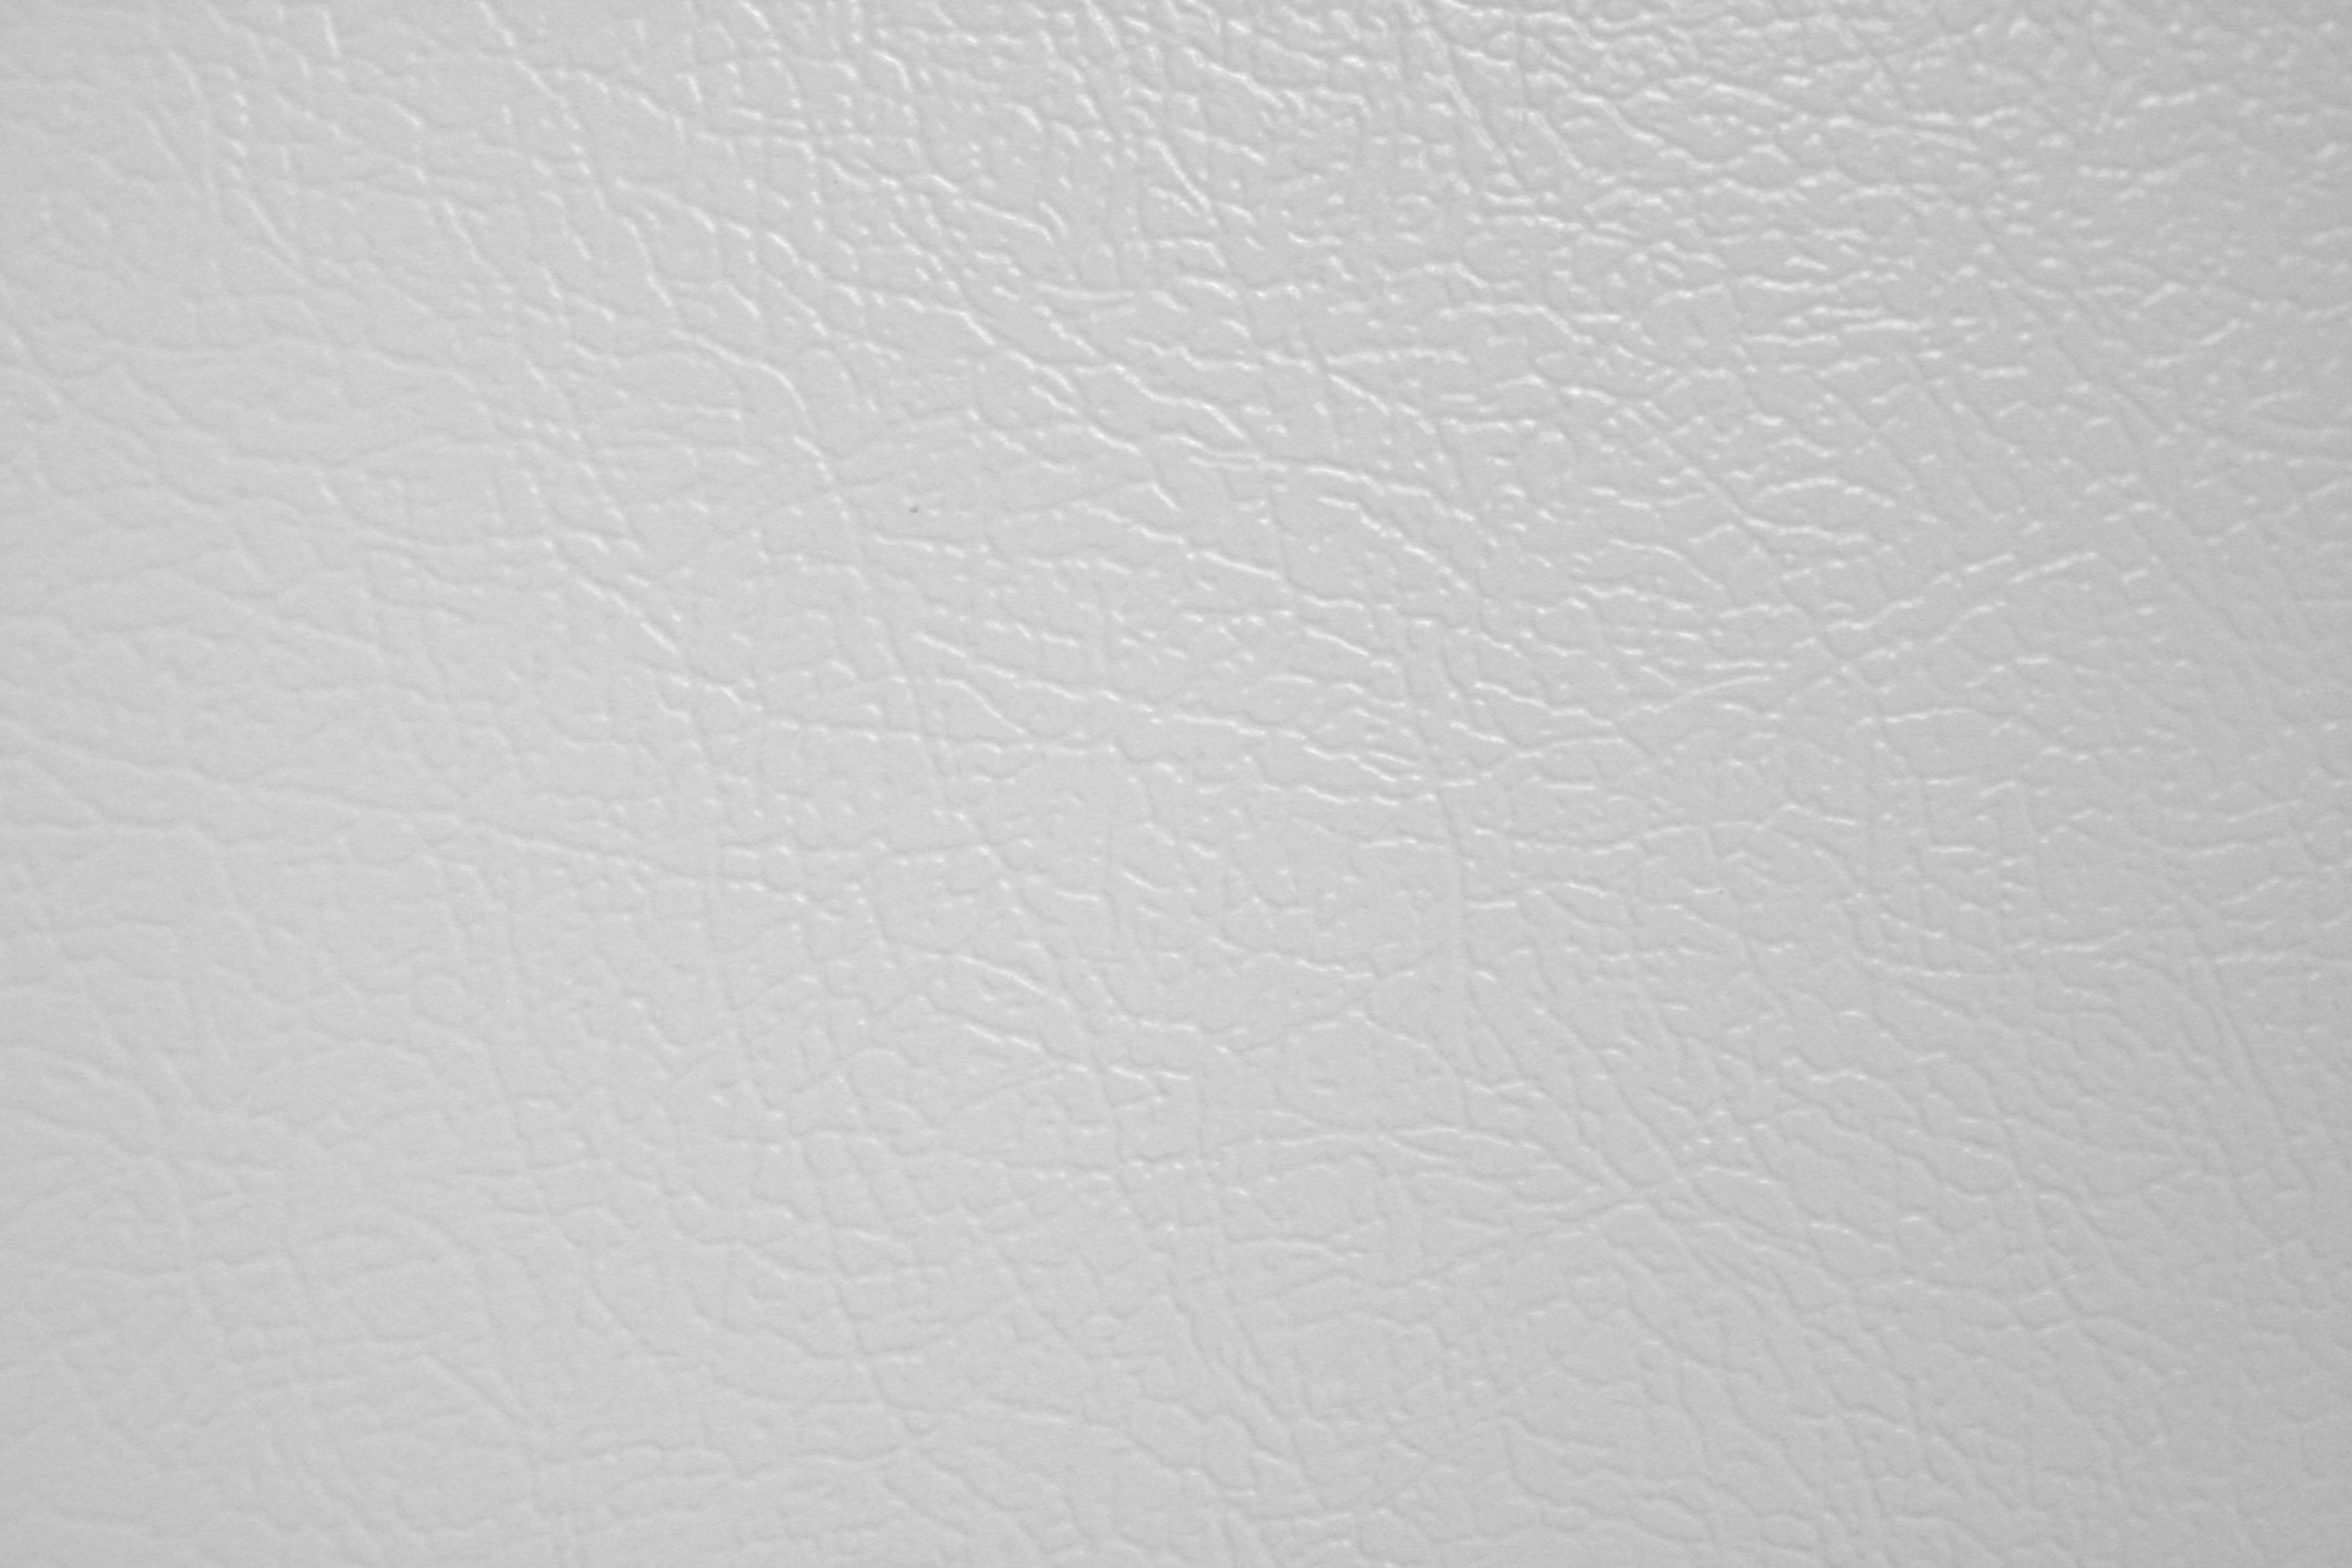 White Faux Leather Texture Picture Free Photograph Photos Public